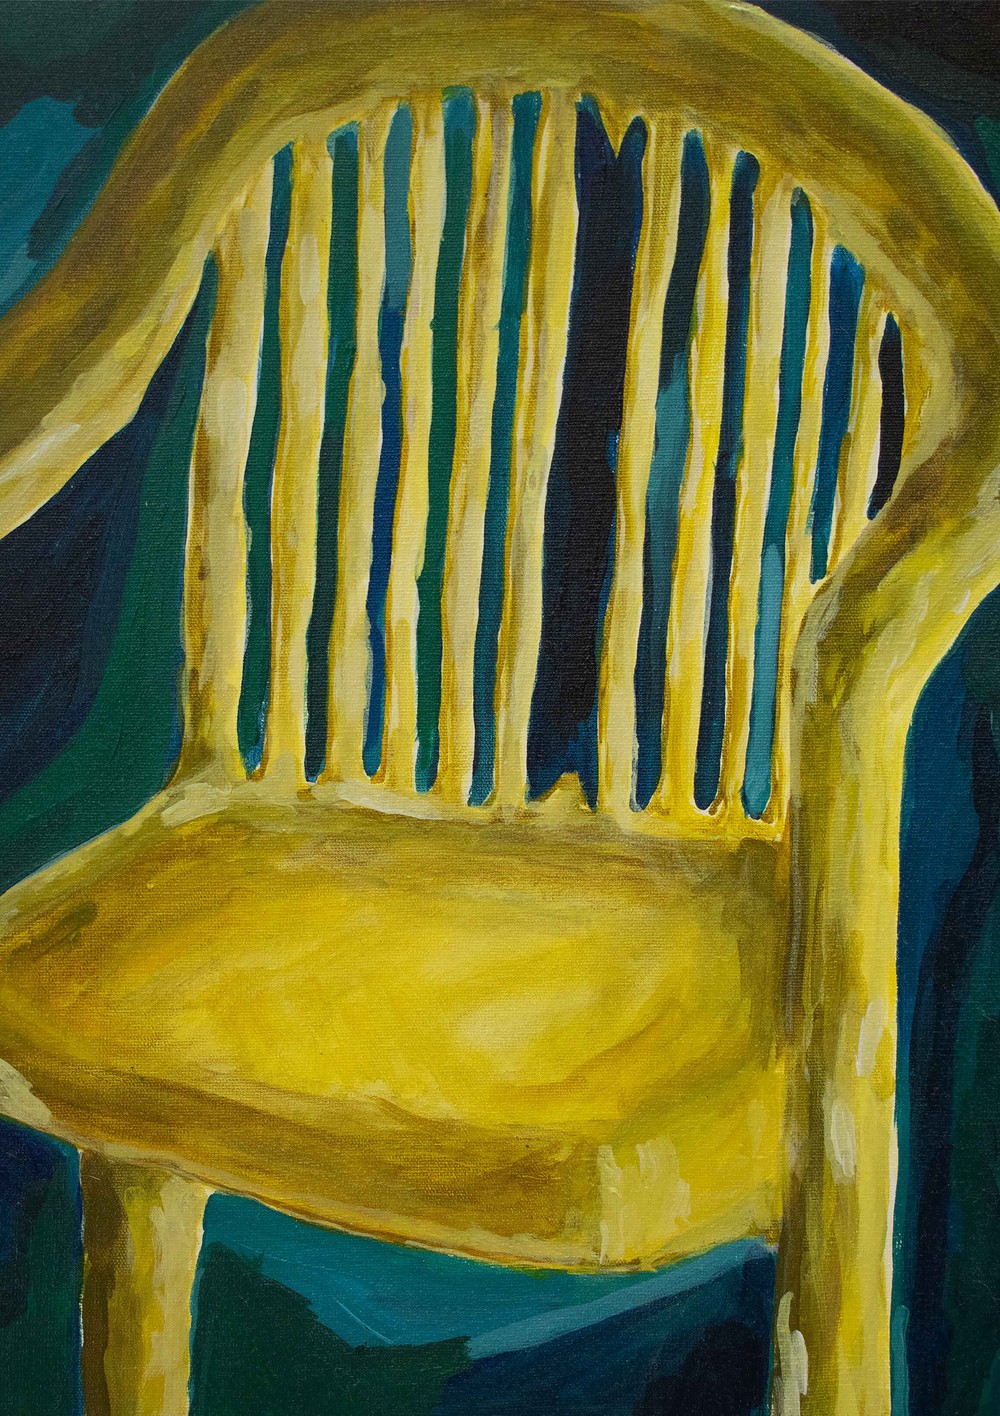 cadeira amarela